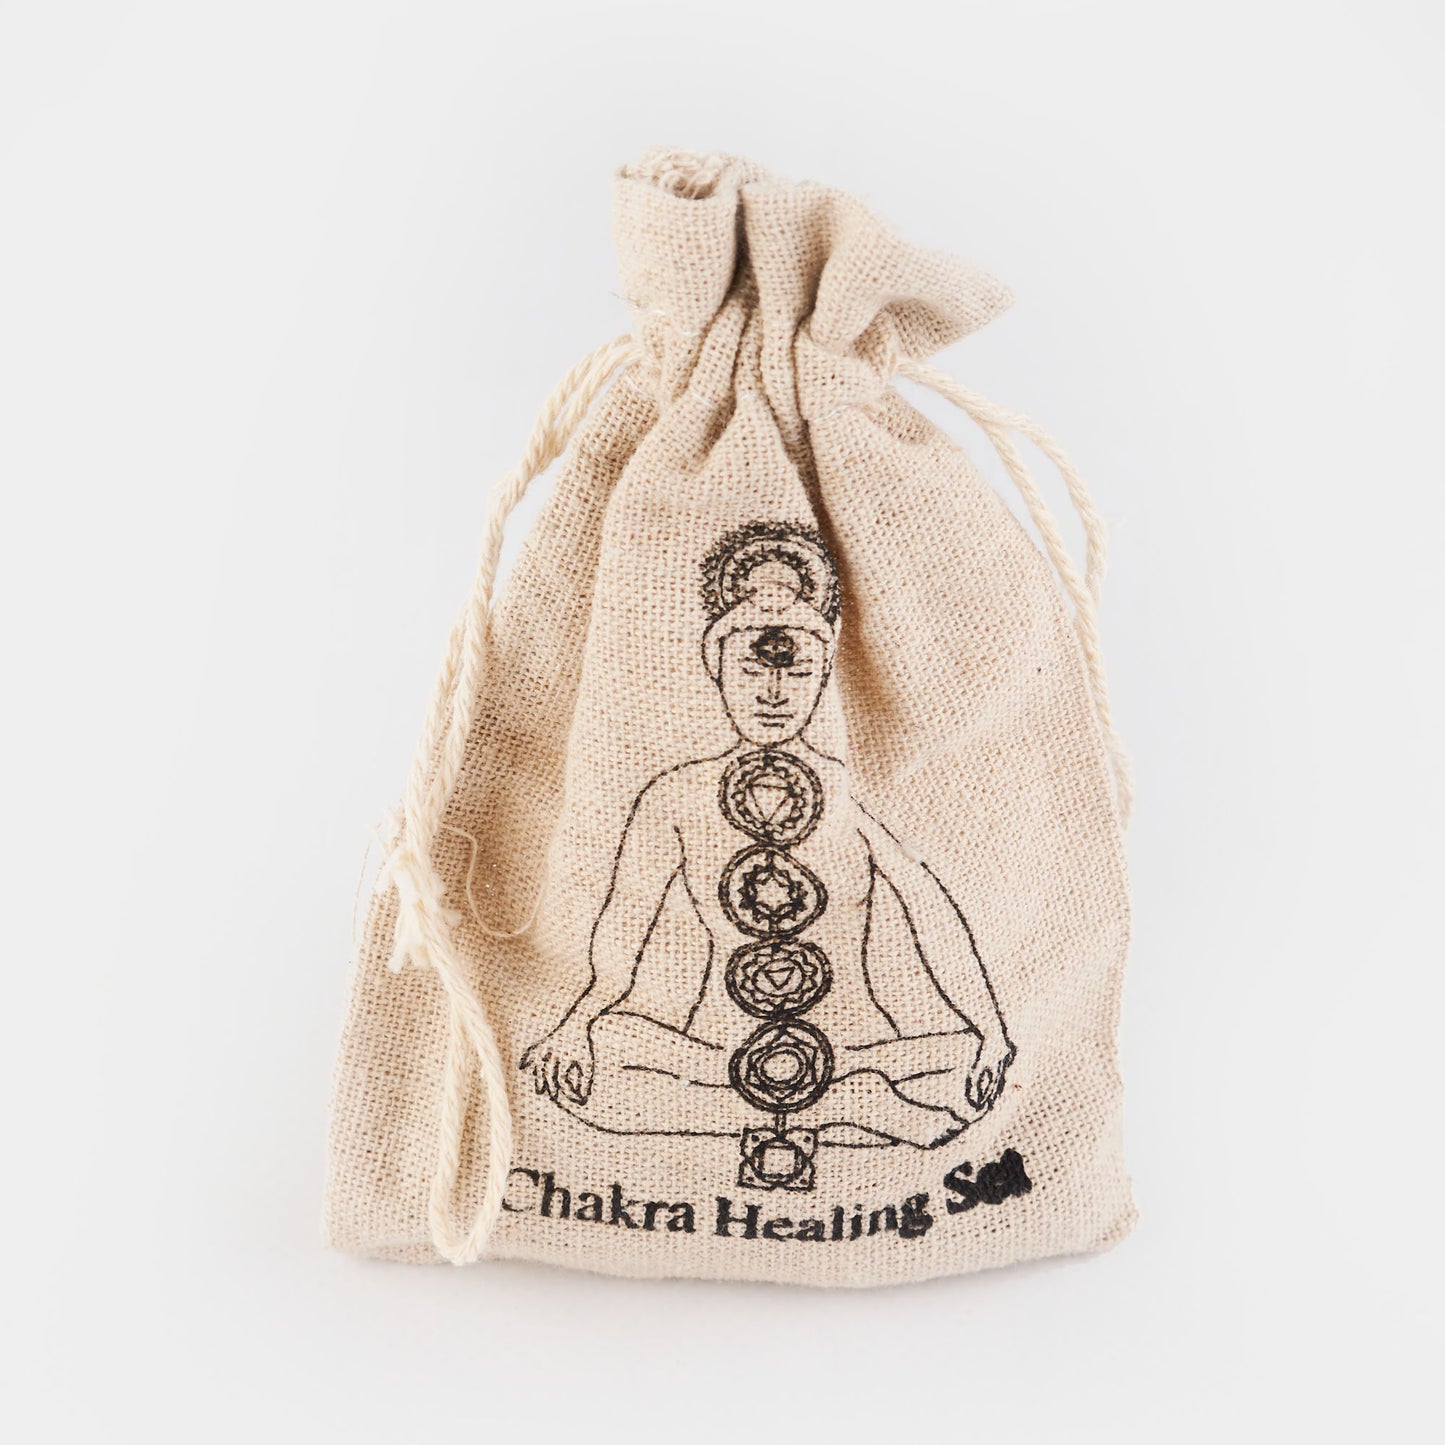 Chakra Healing Gemstone Set - Bag of 7